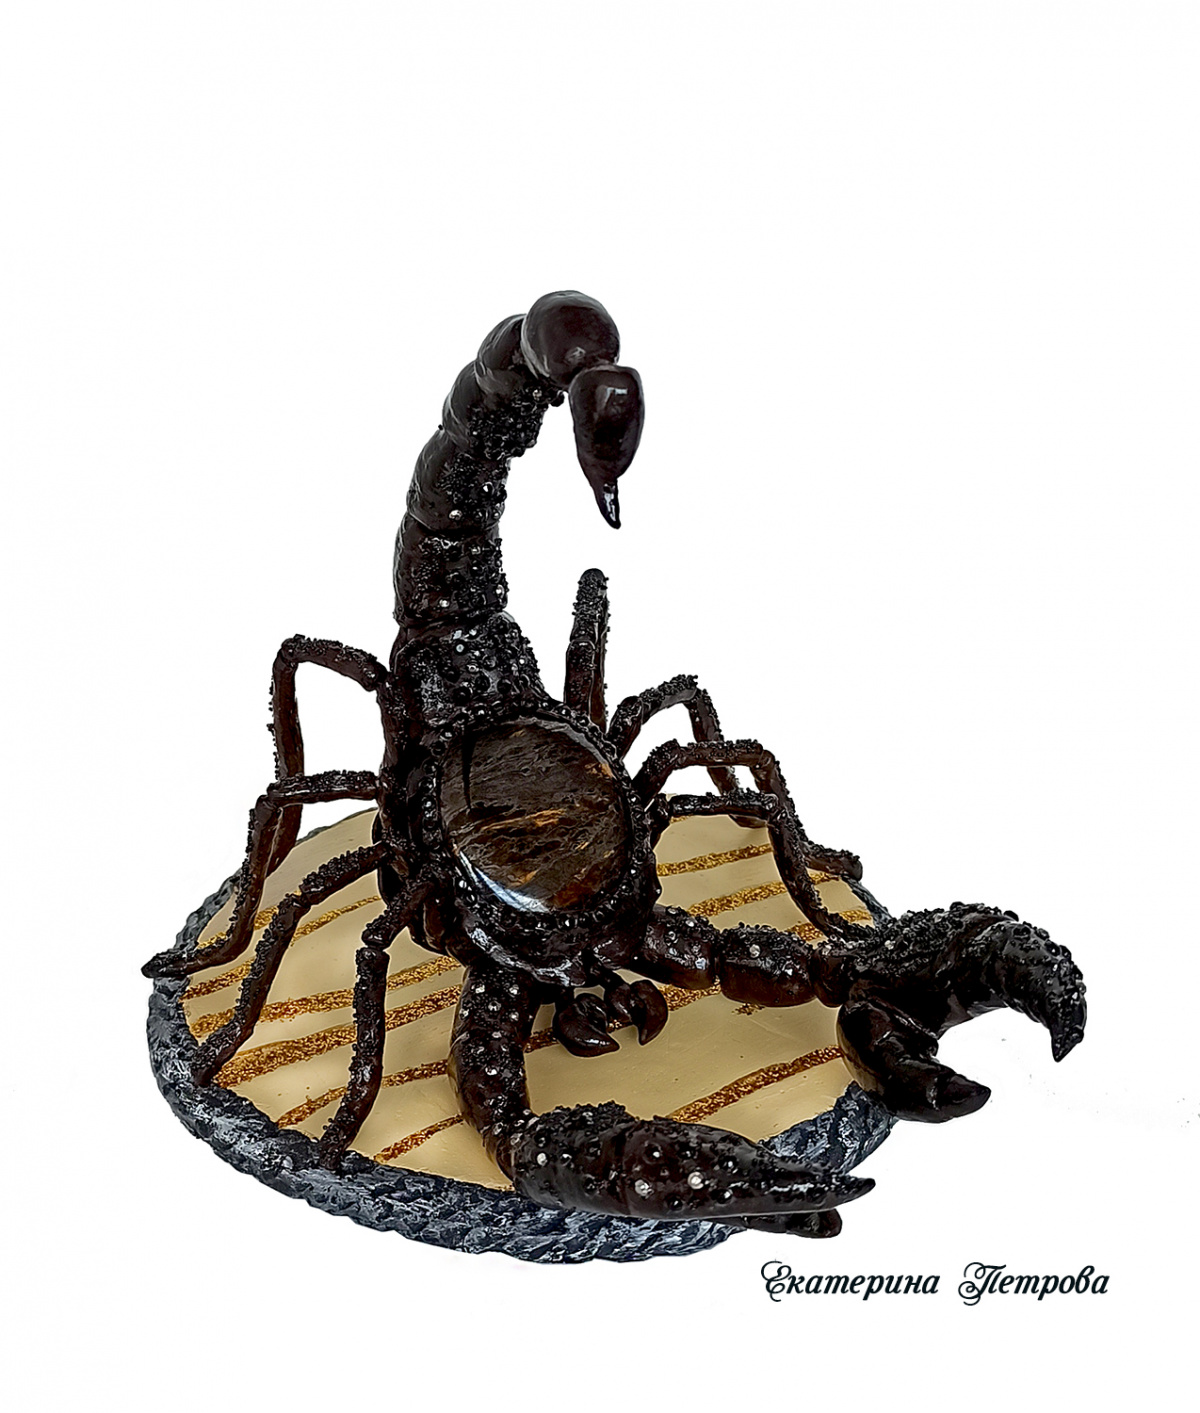 НЕбисерная лавка чудес: Царь скорпионов